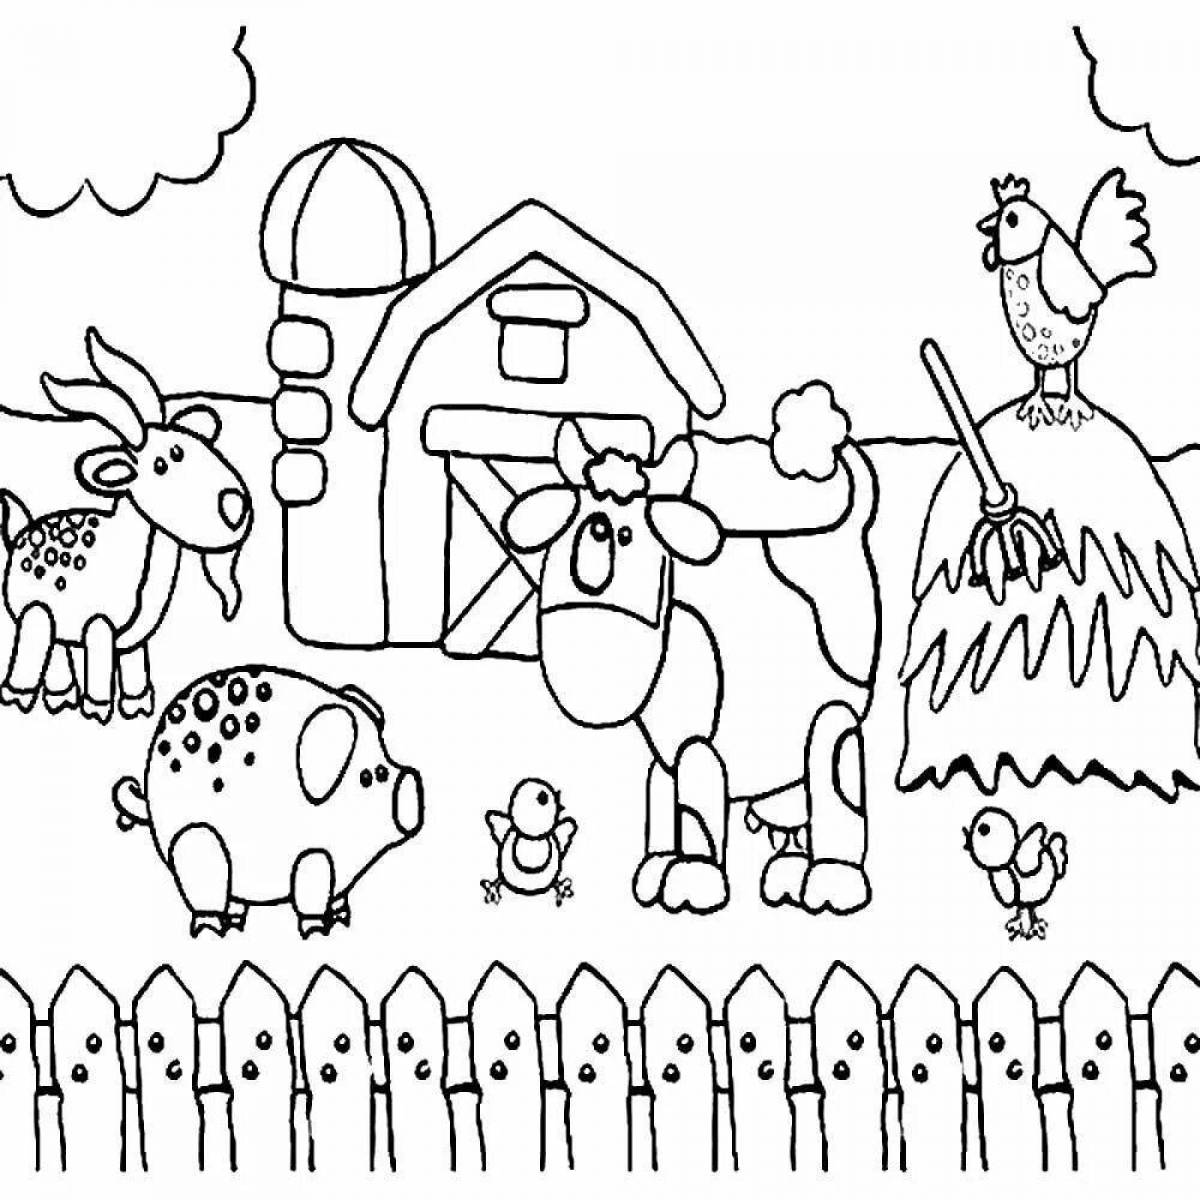 Children's bright winter hut coloring book